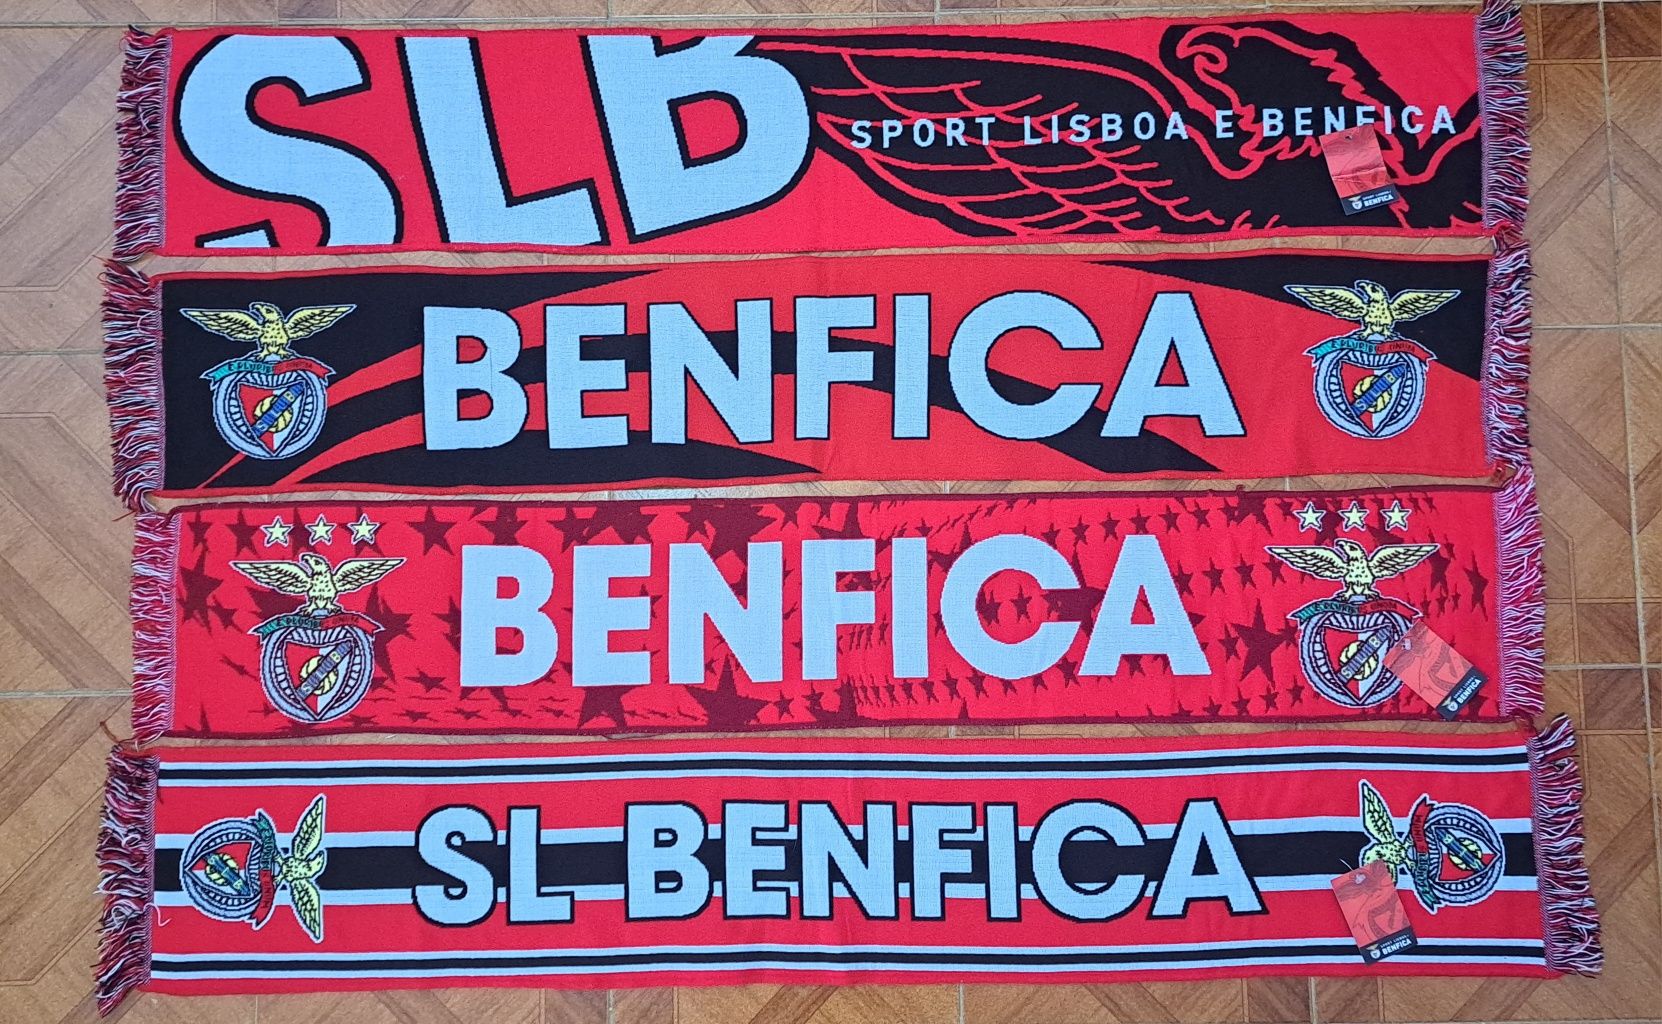 Cachecóis do Sport Lisboa e Benfica